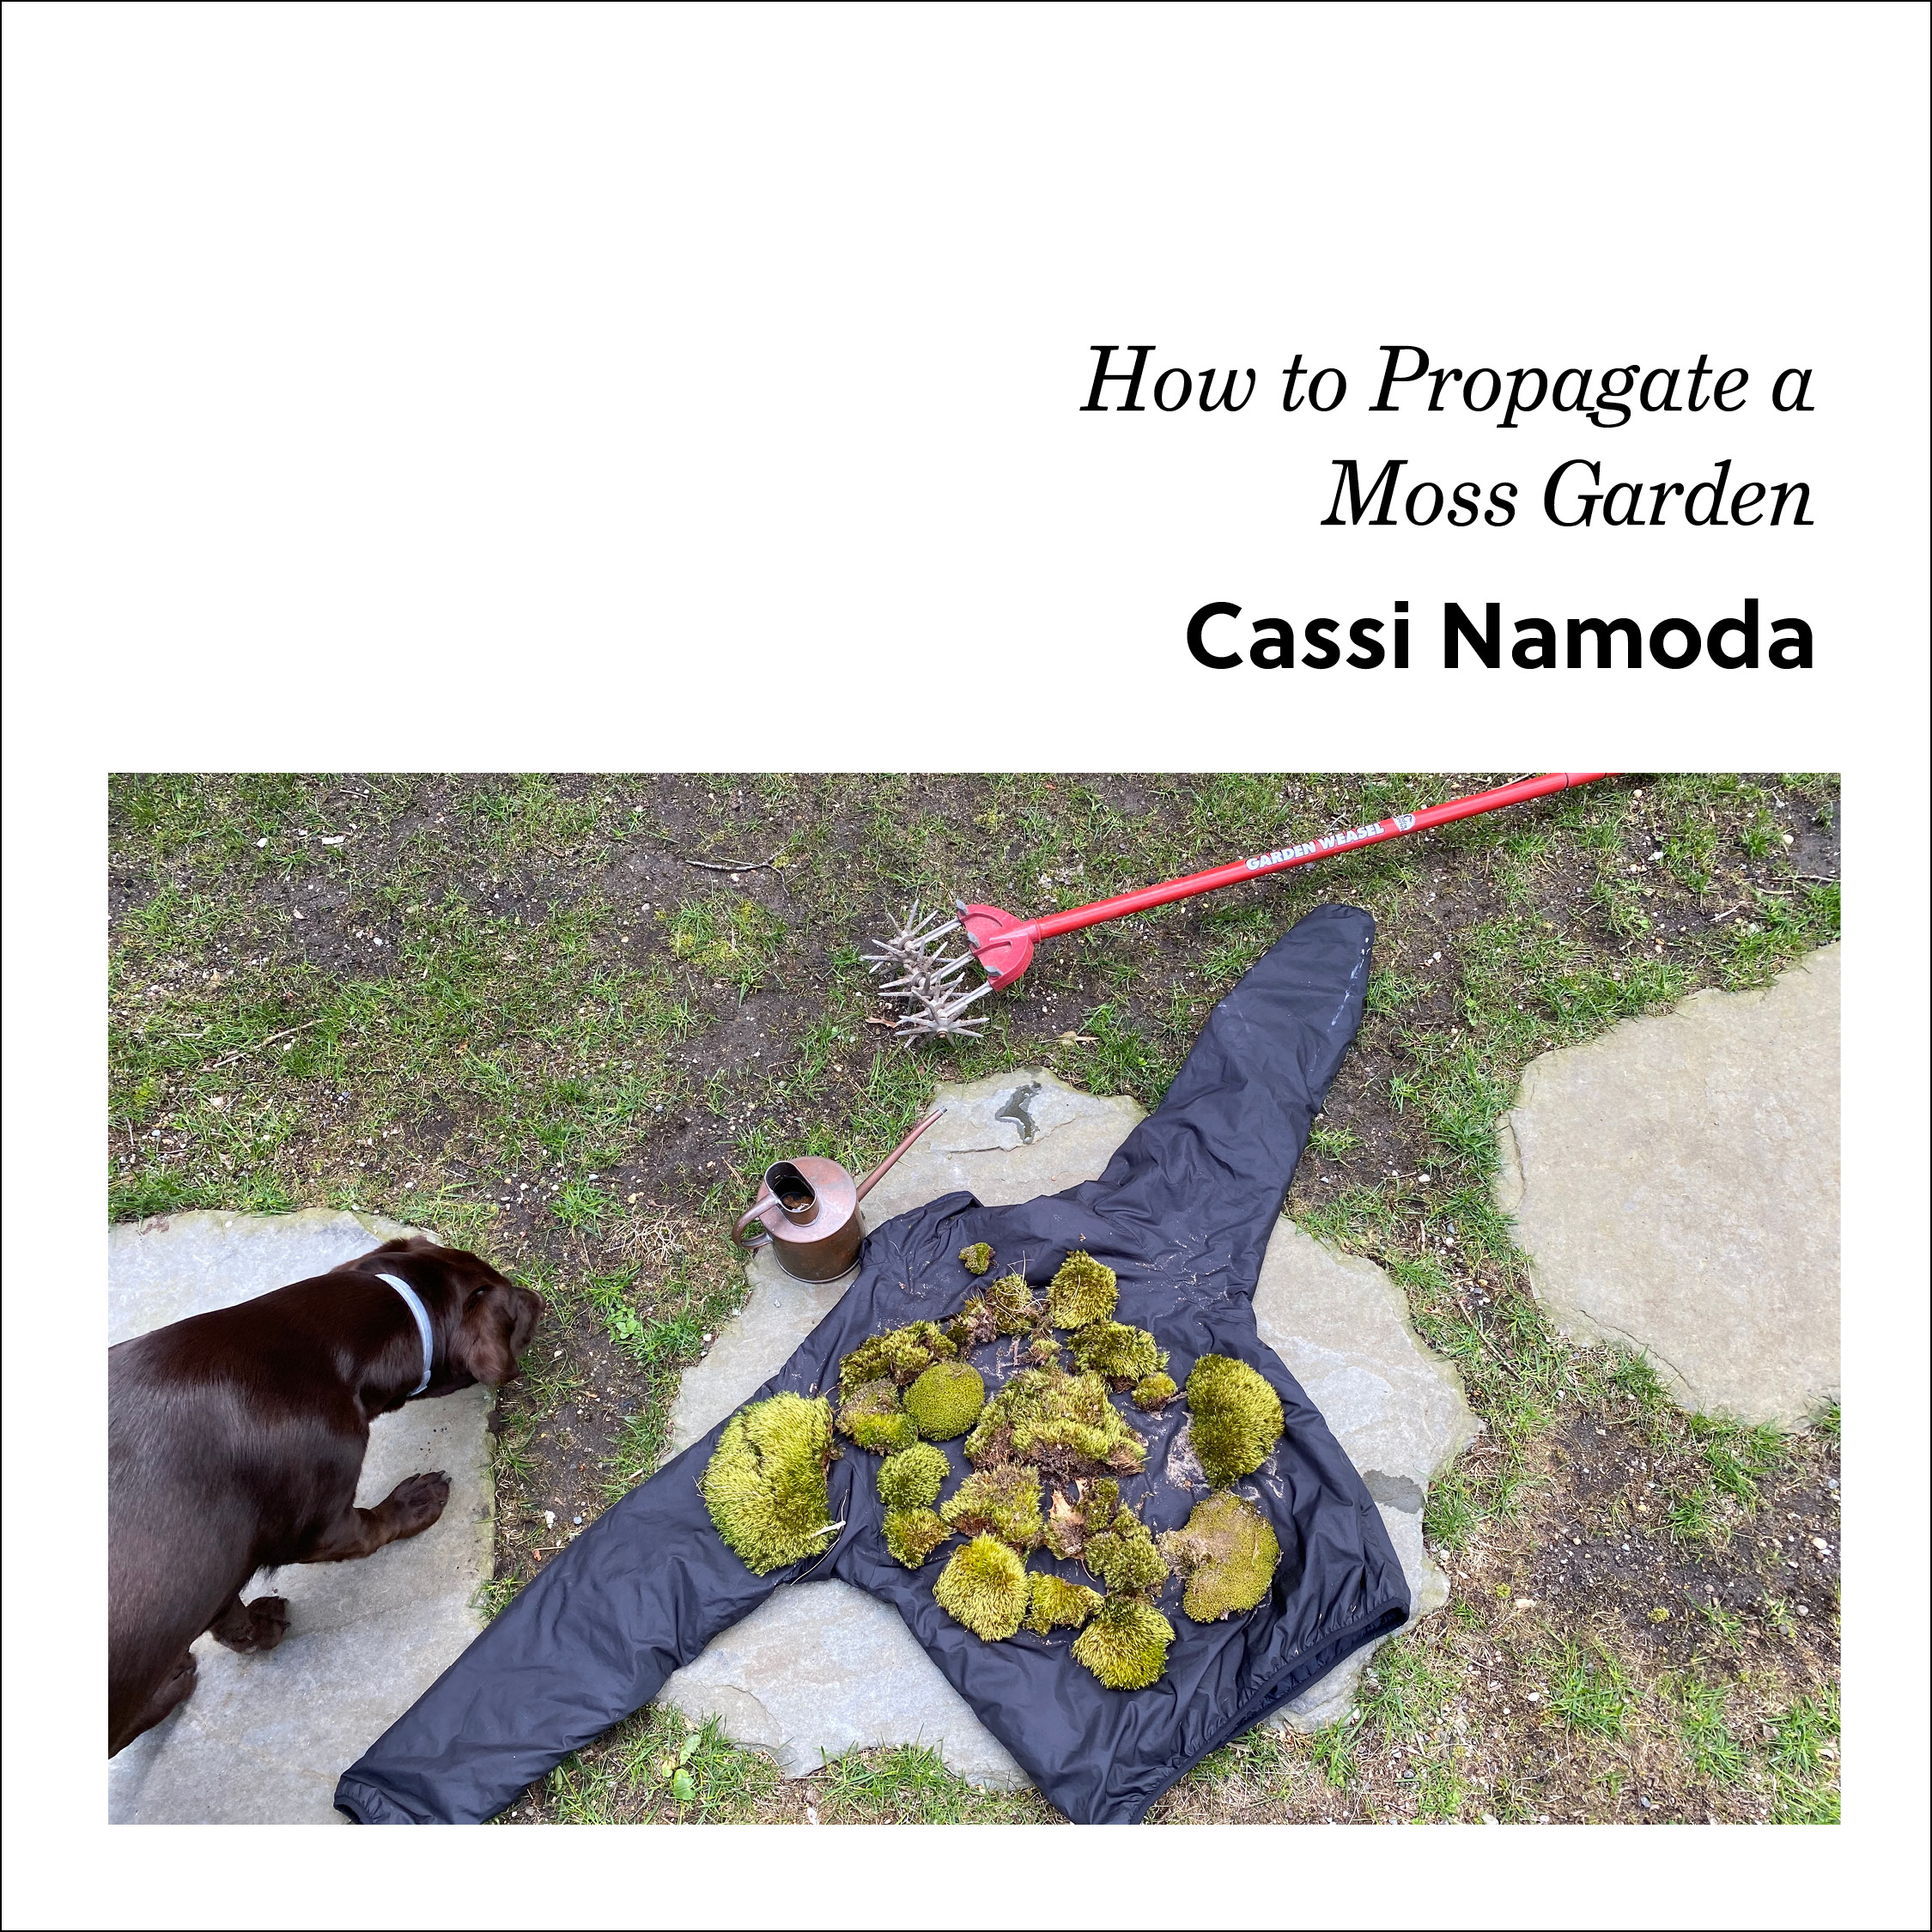 Week 2: Cassi Namoda